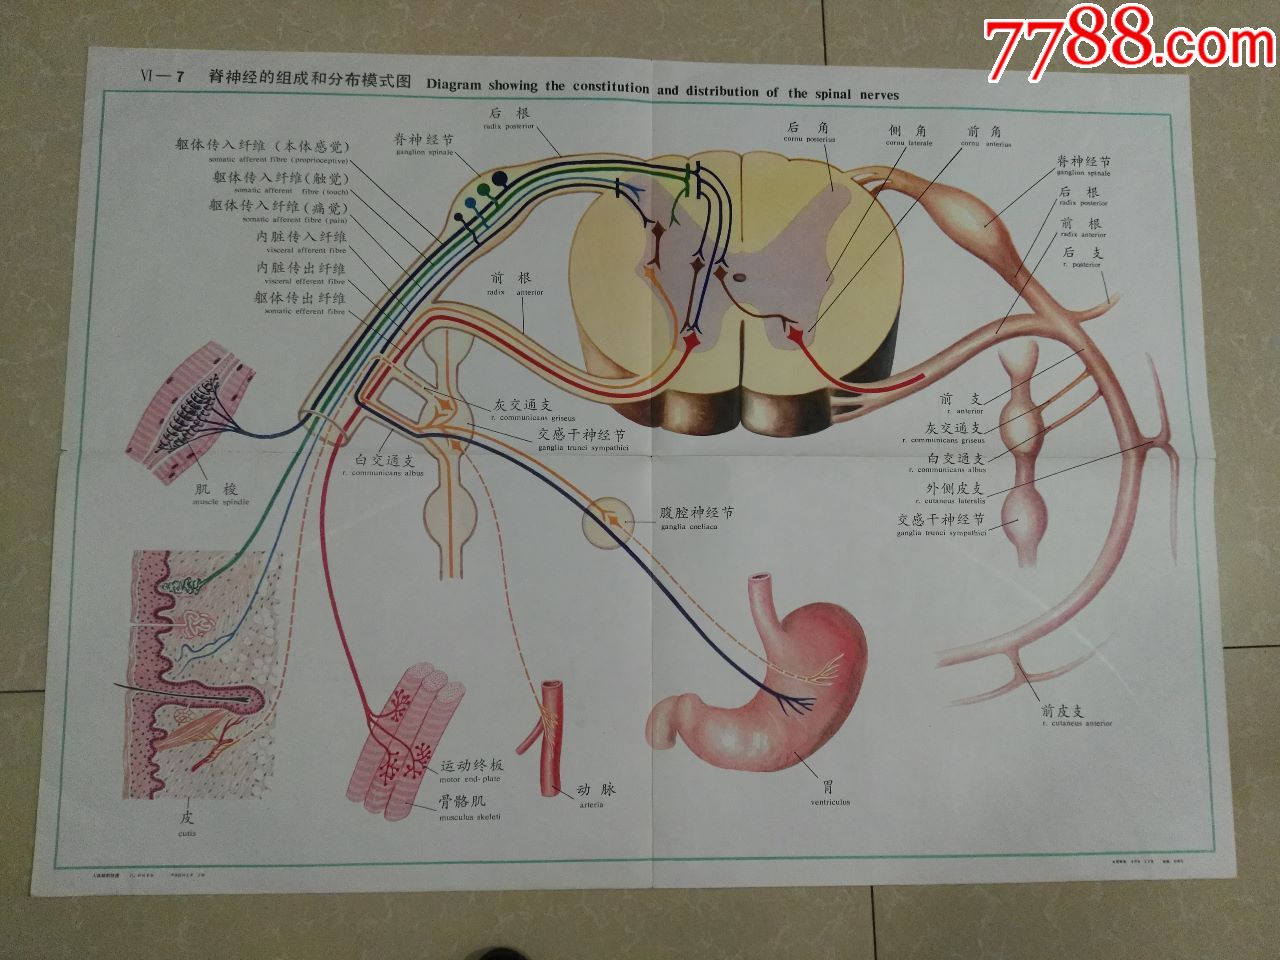 全开人体解剖挂图-脊神经的组成和分布模式图-中国医科大学出品